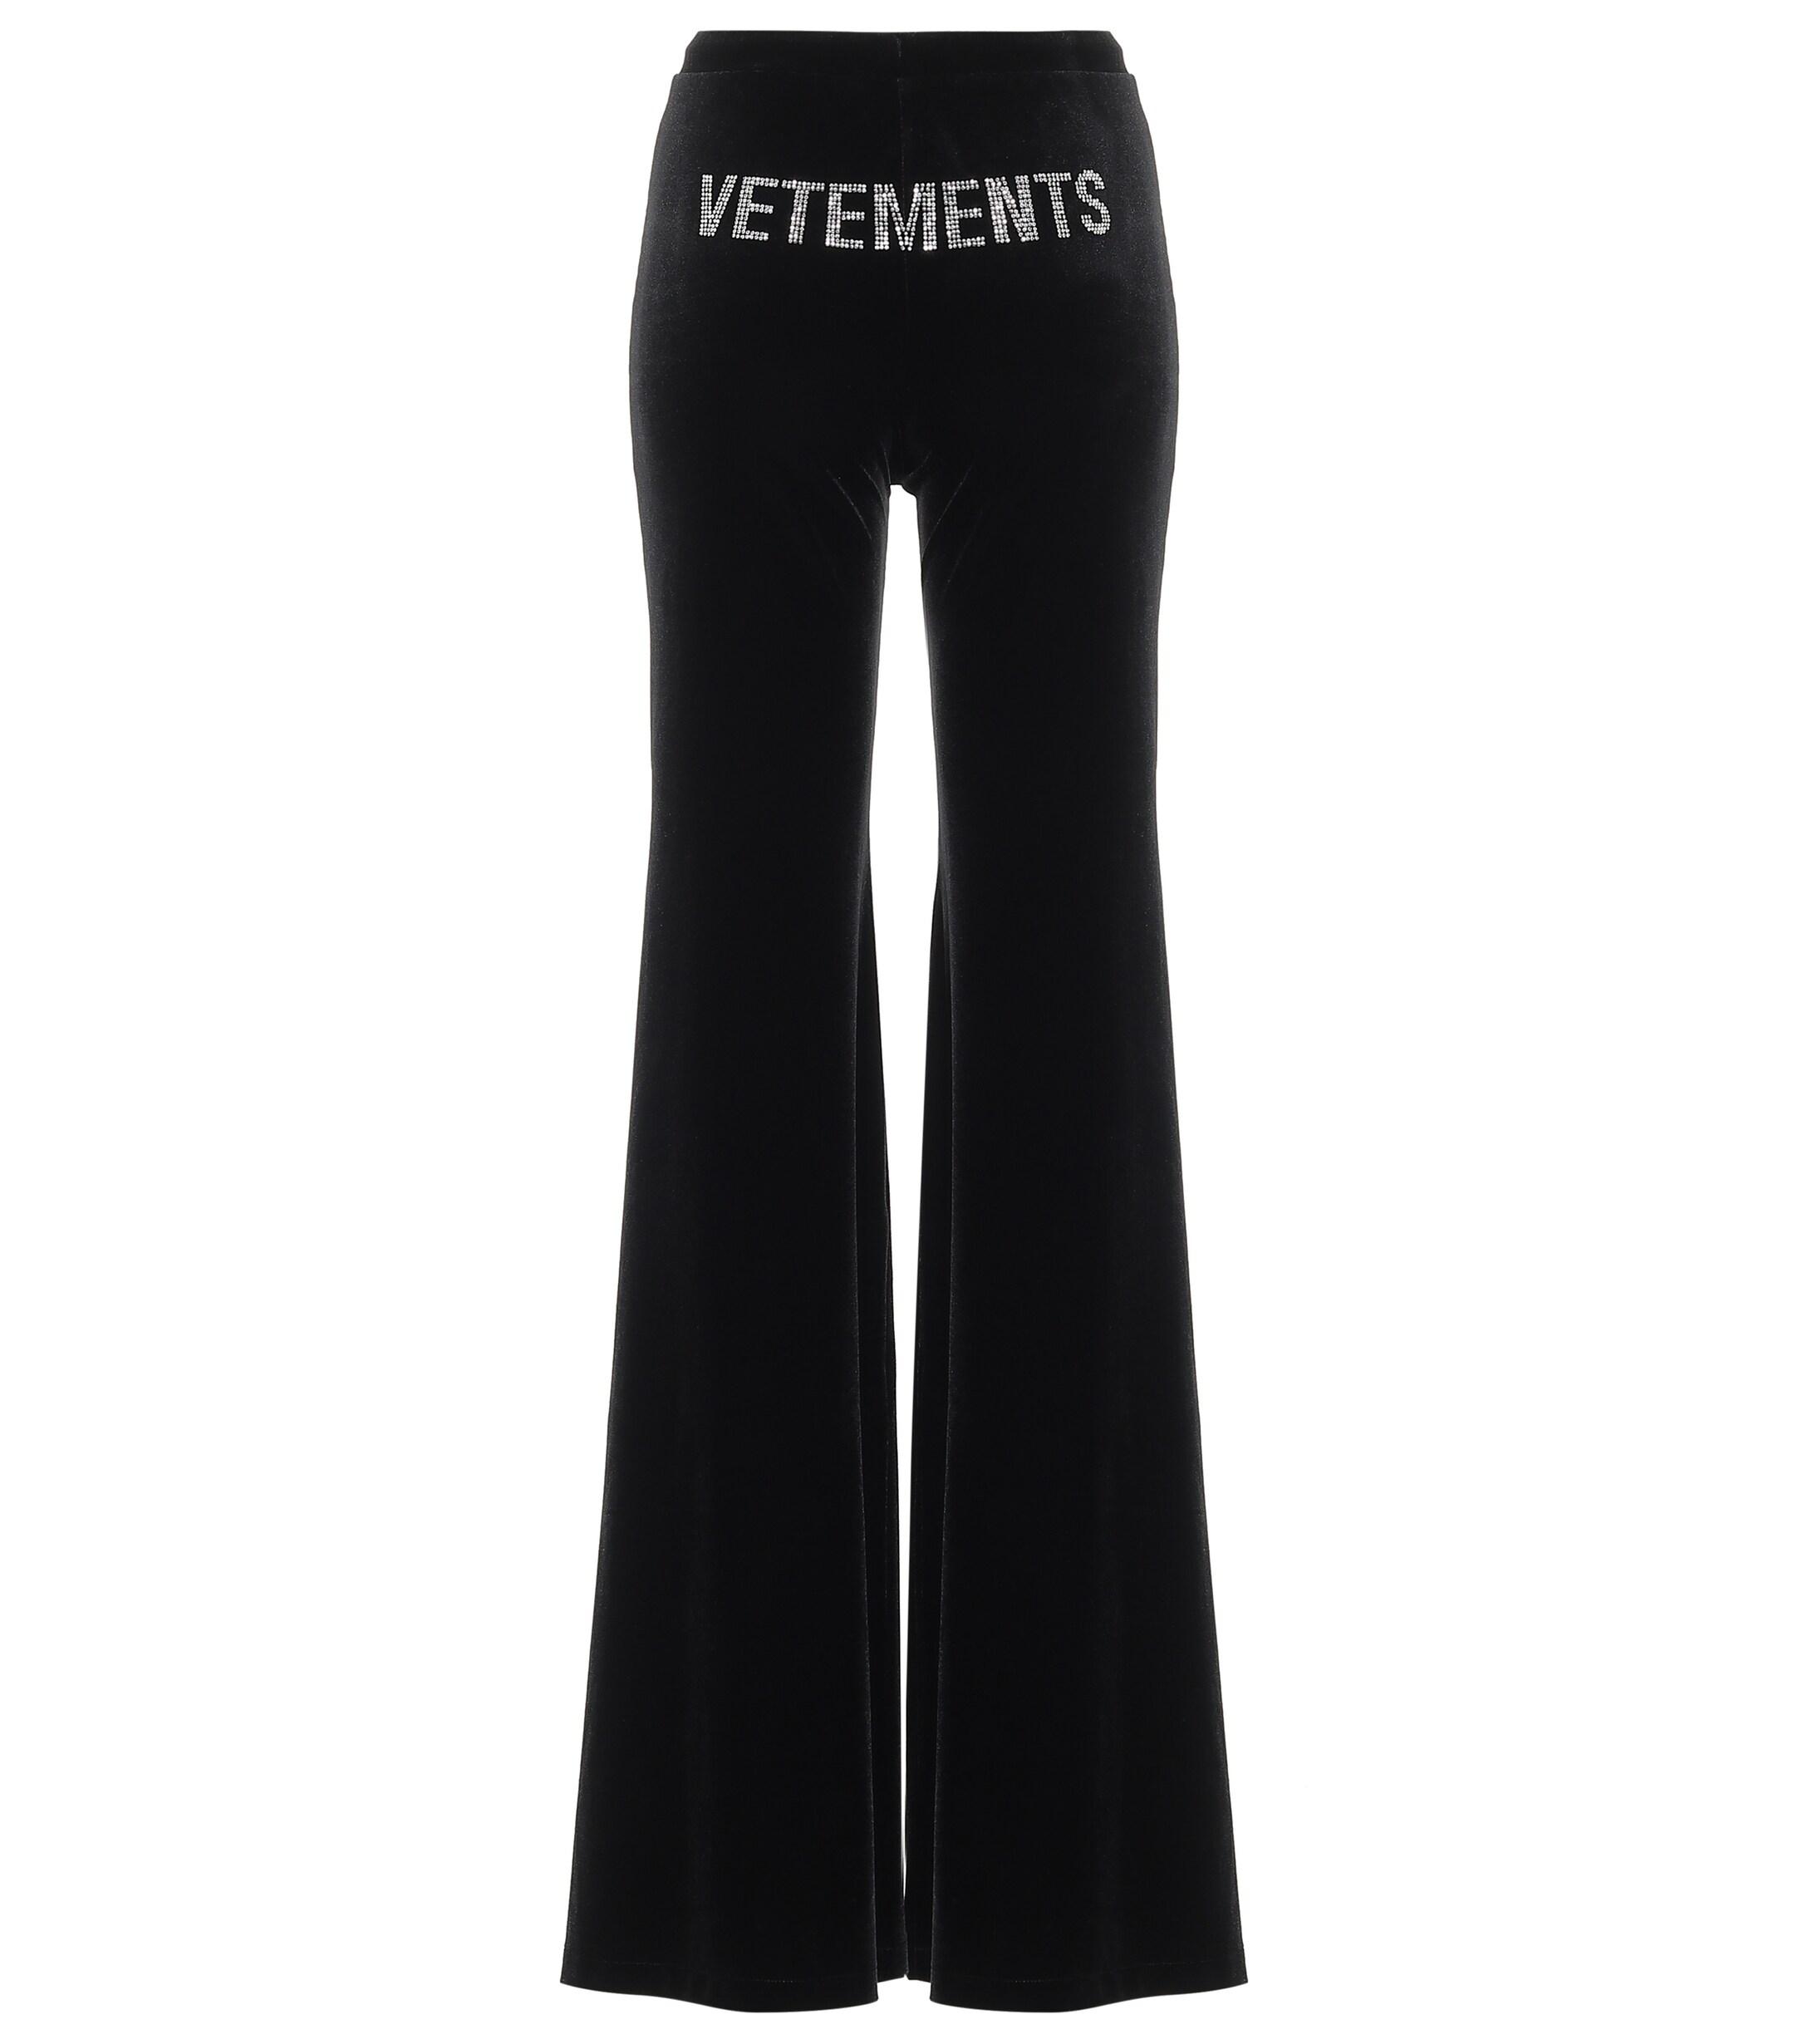 Vetements Embellished Stretch-velvet Pants in Black - Lyst